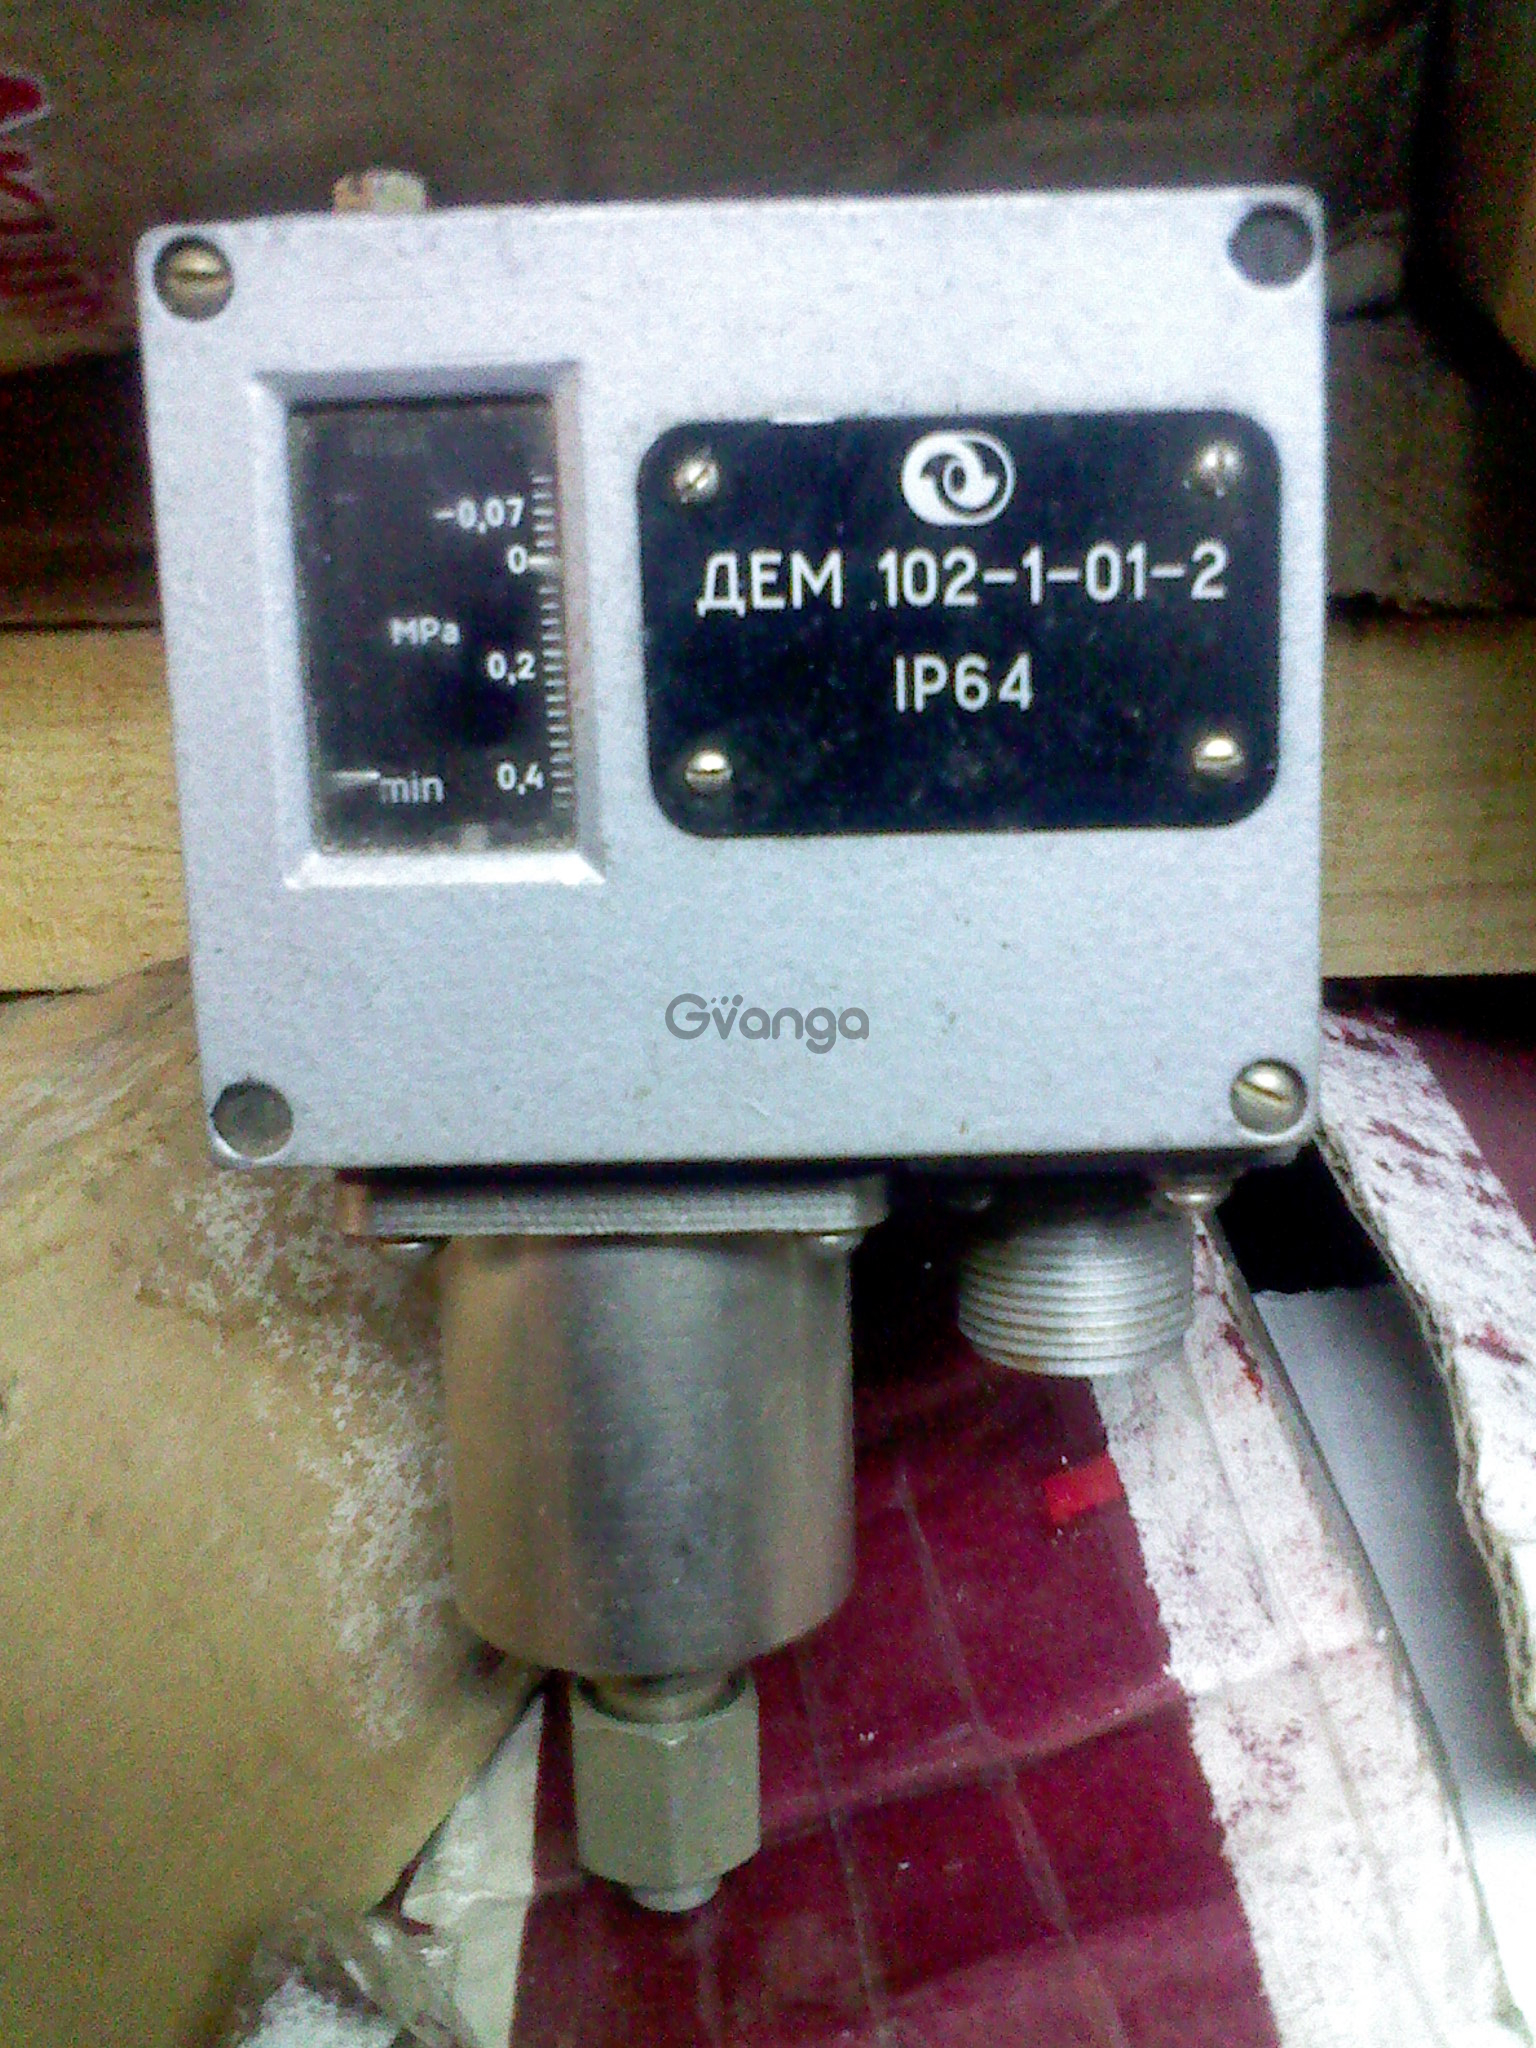 Датчики давления дем. Дем-102с датчики-реле давления. Реле давления дем 102. Датчик реле давления дем 102-1-02-1. Датчик реле давления дем102-2-01-2.